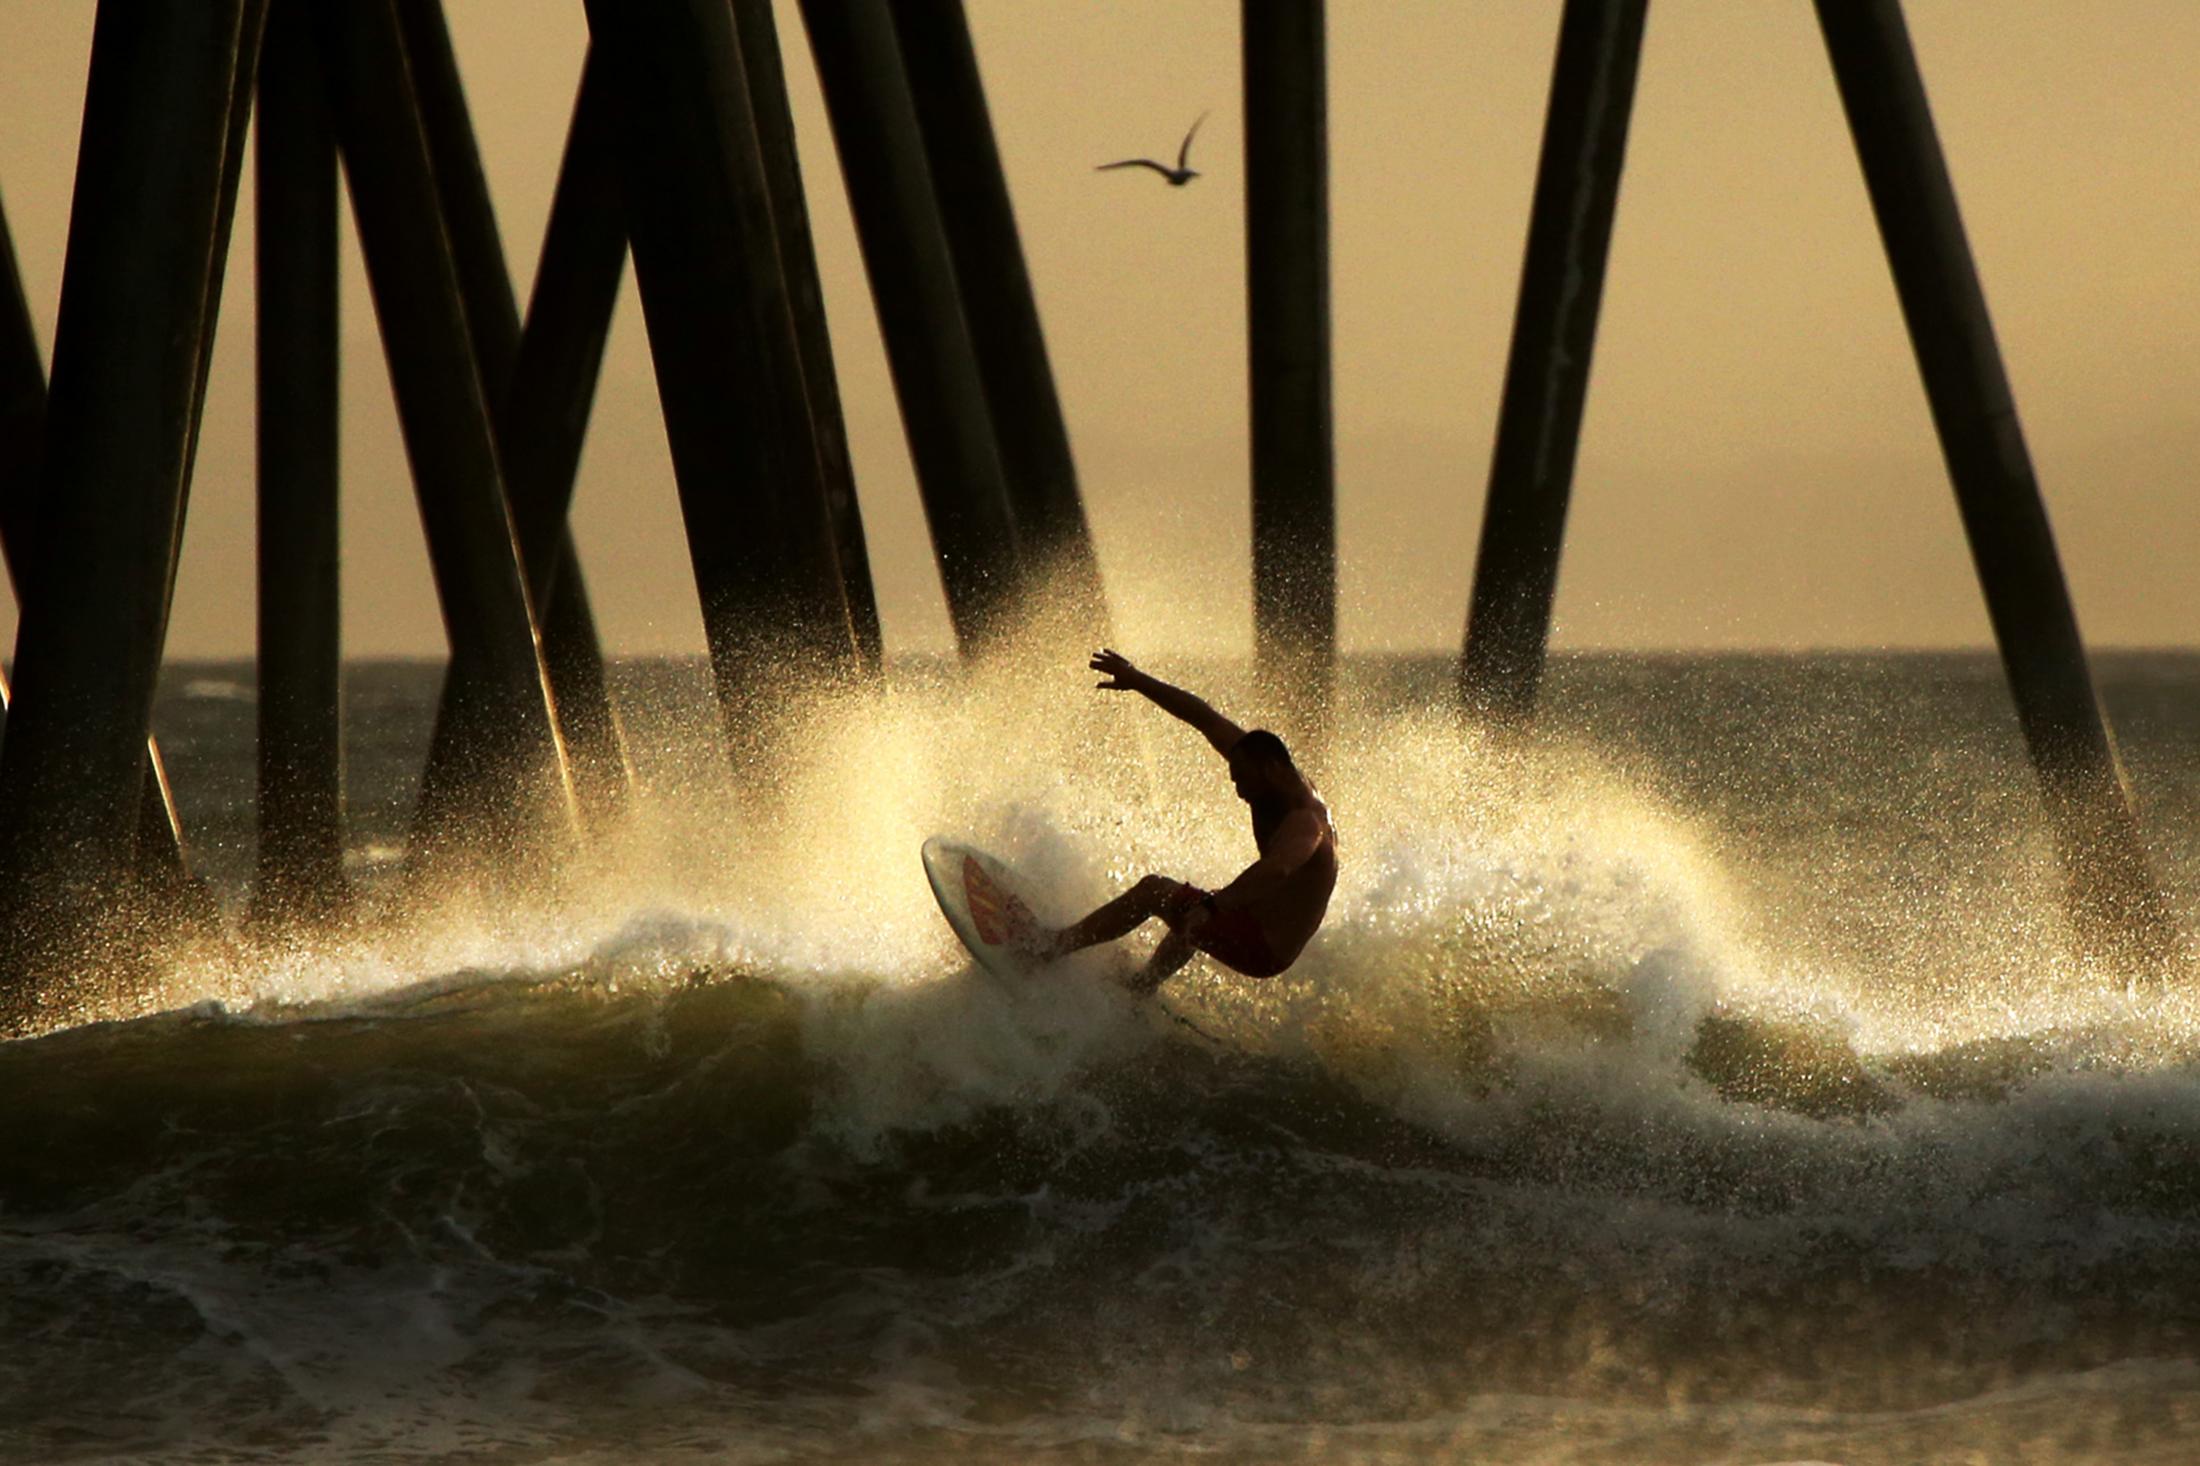 HUNTINGTON BEACH, CA - JANUARY 19: A surfer rides a wave near the Huntington Beach Pier on January 19, 2021 in Huntington Beach, California. A...